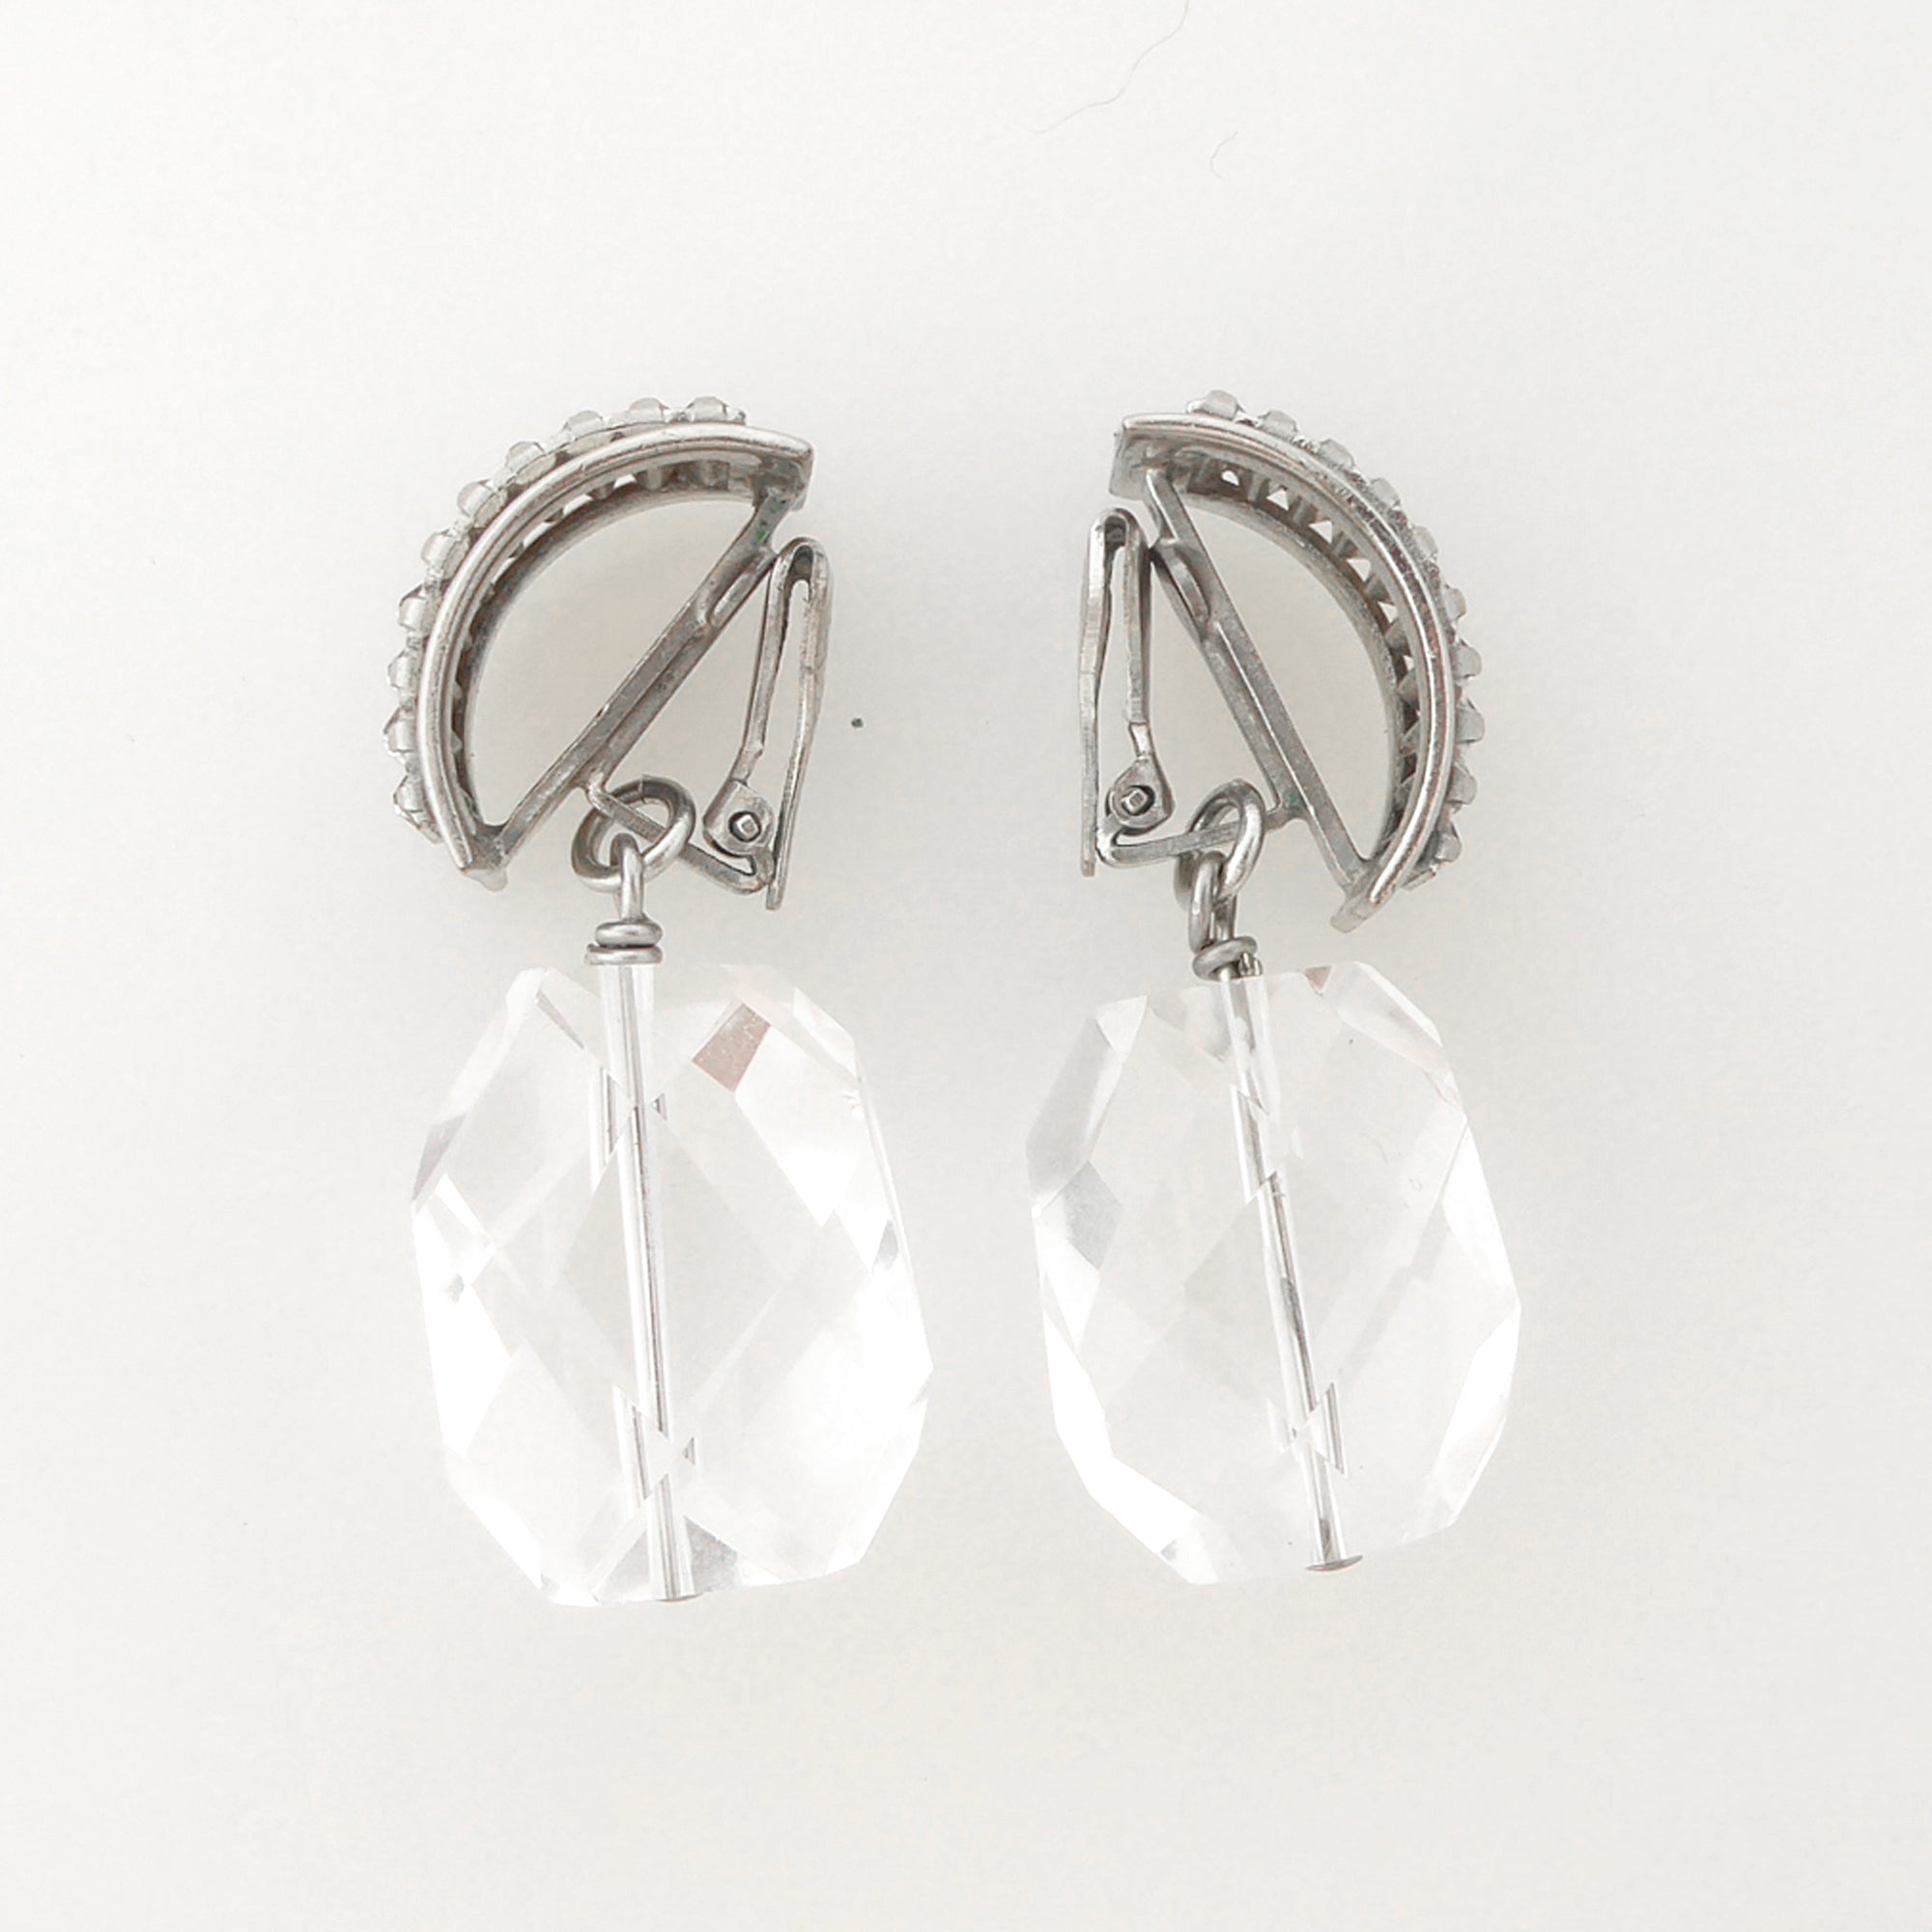 Rhinestone baguette earrings by Jenny Dayco 4